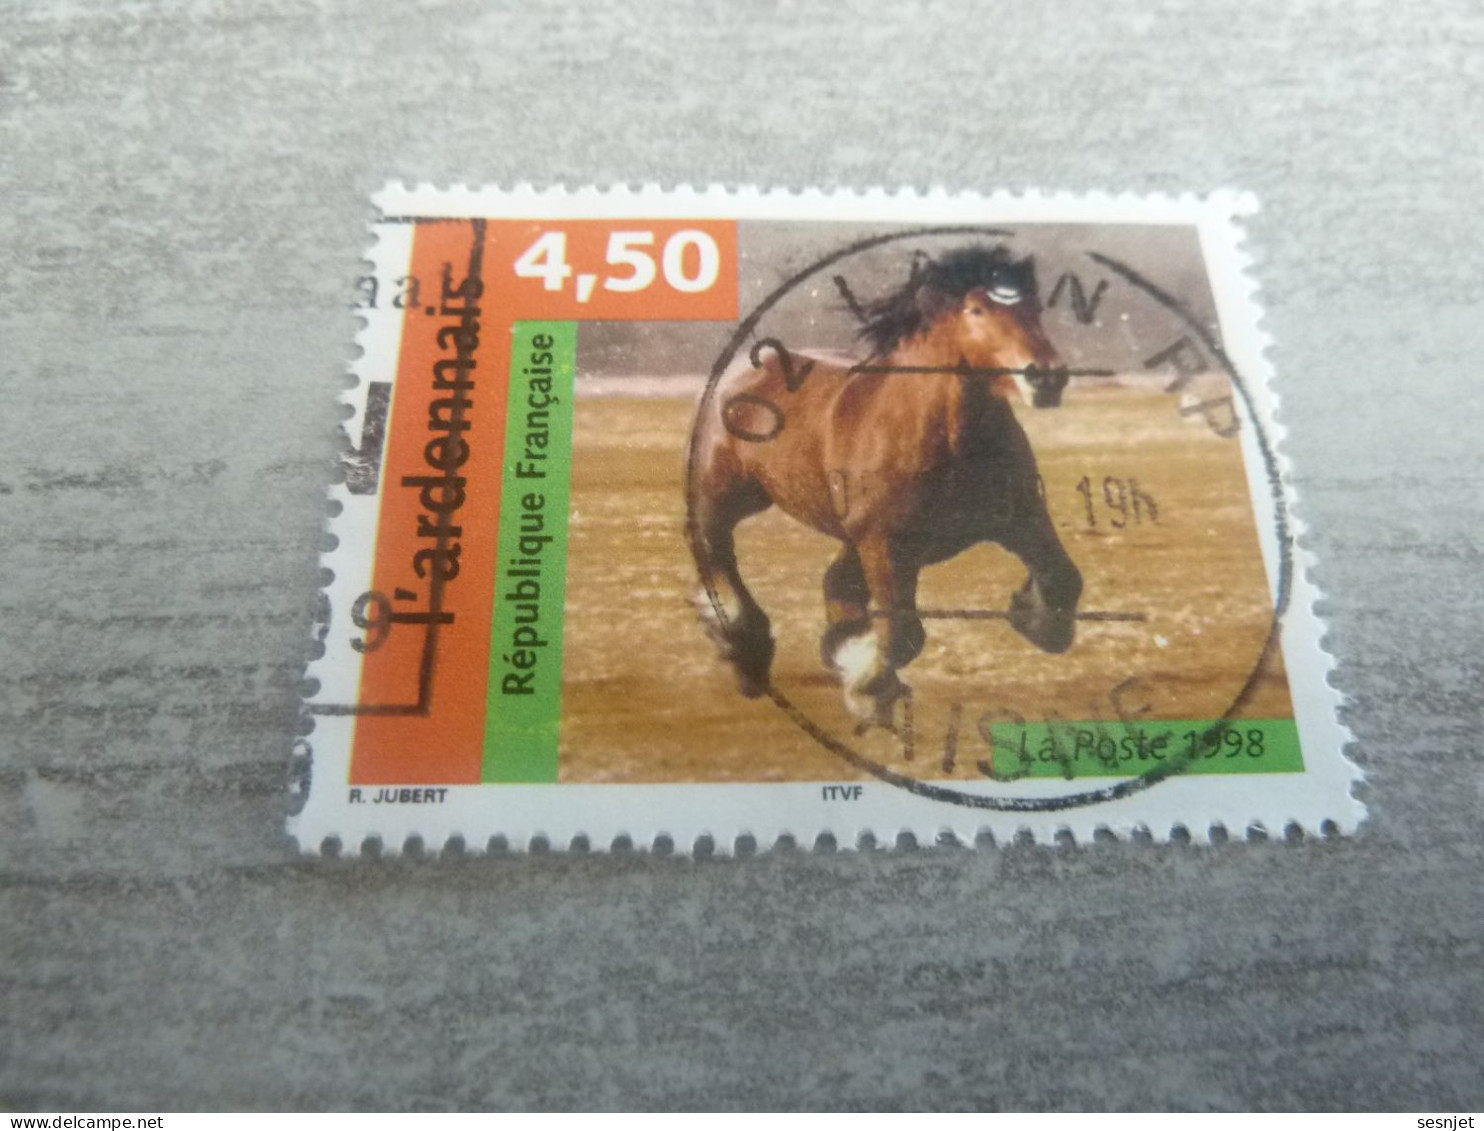 L'Ardennais - Chevaux - 4f.50. - Yt 3185 - Multicolore - Oblitéré - Année 1998 - - Pferde